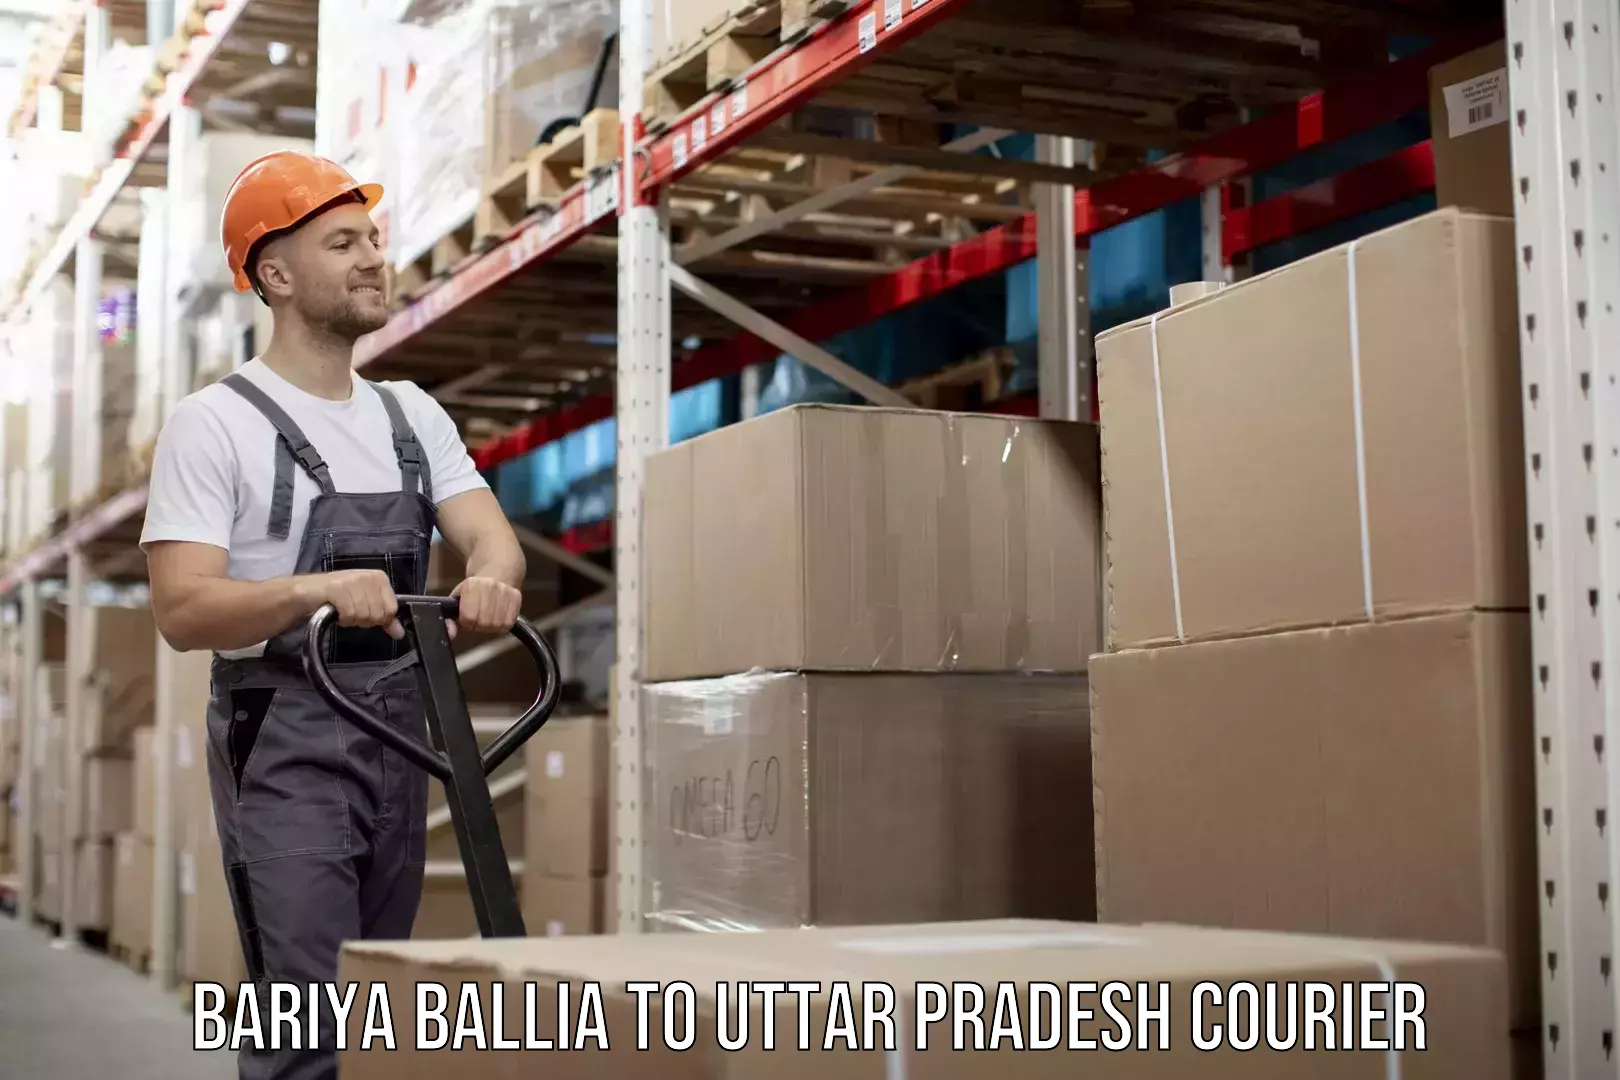 Courier service comparison in Bariya Ballia to Maholi